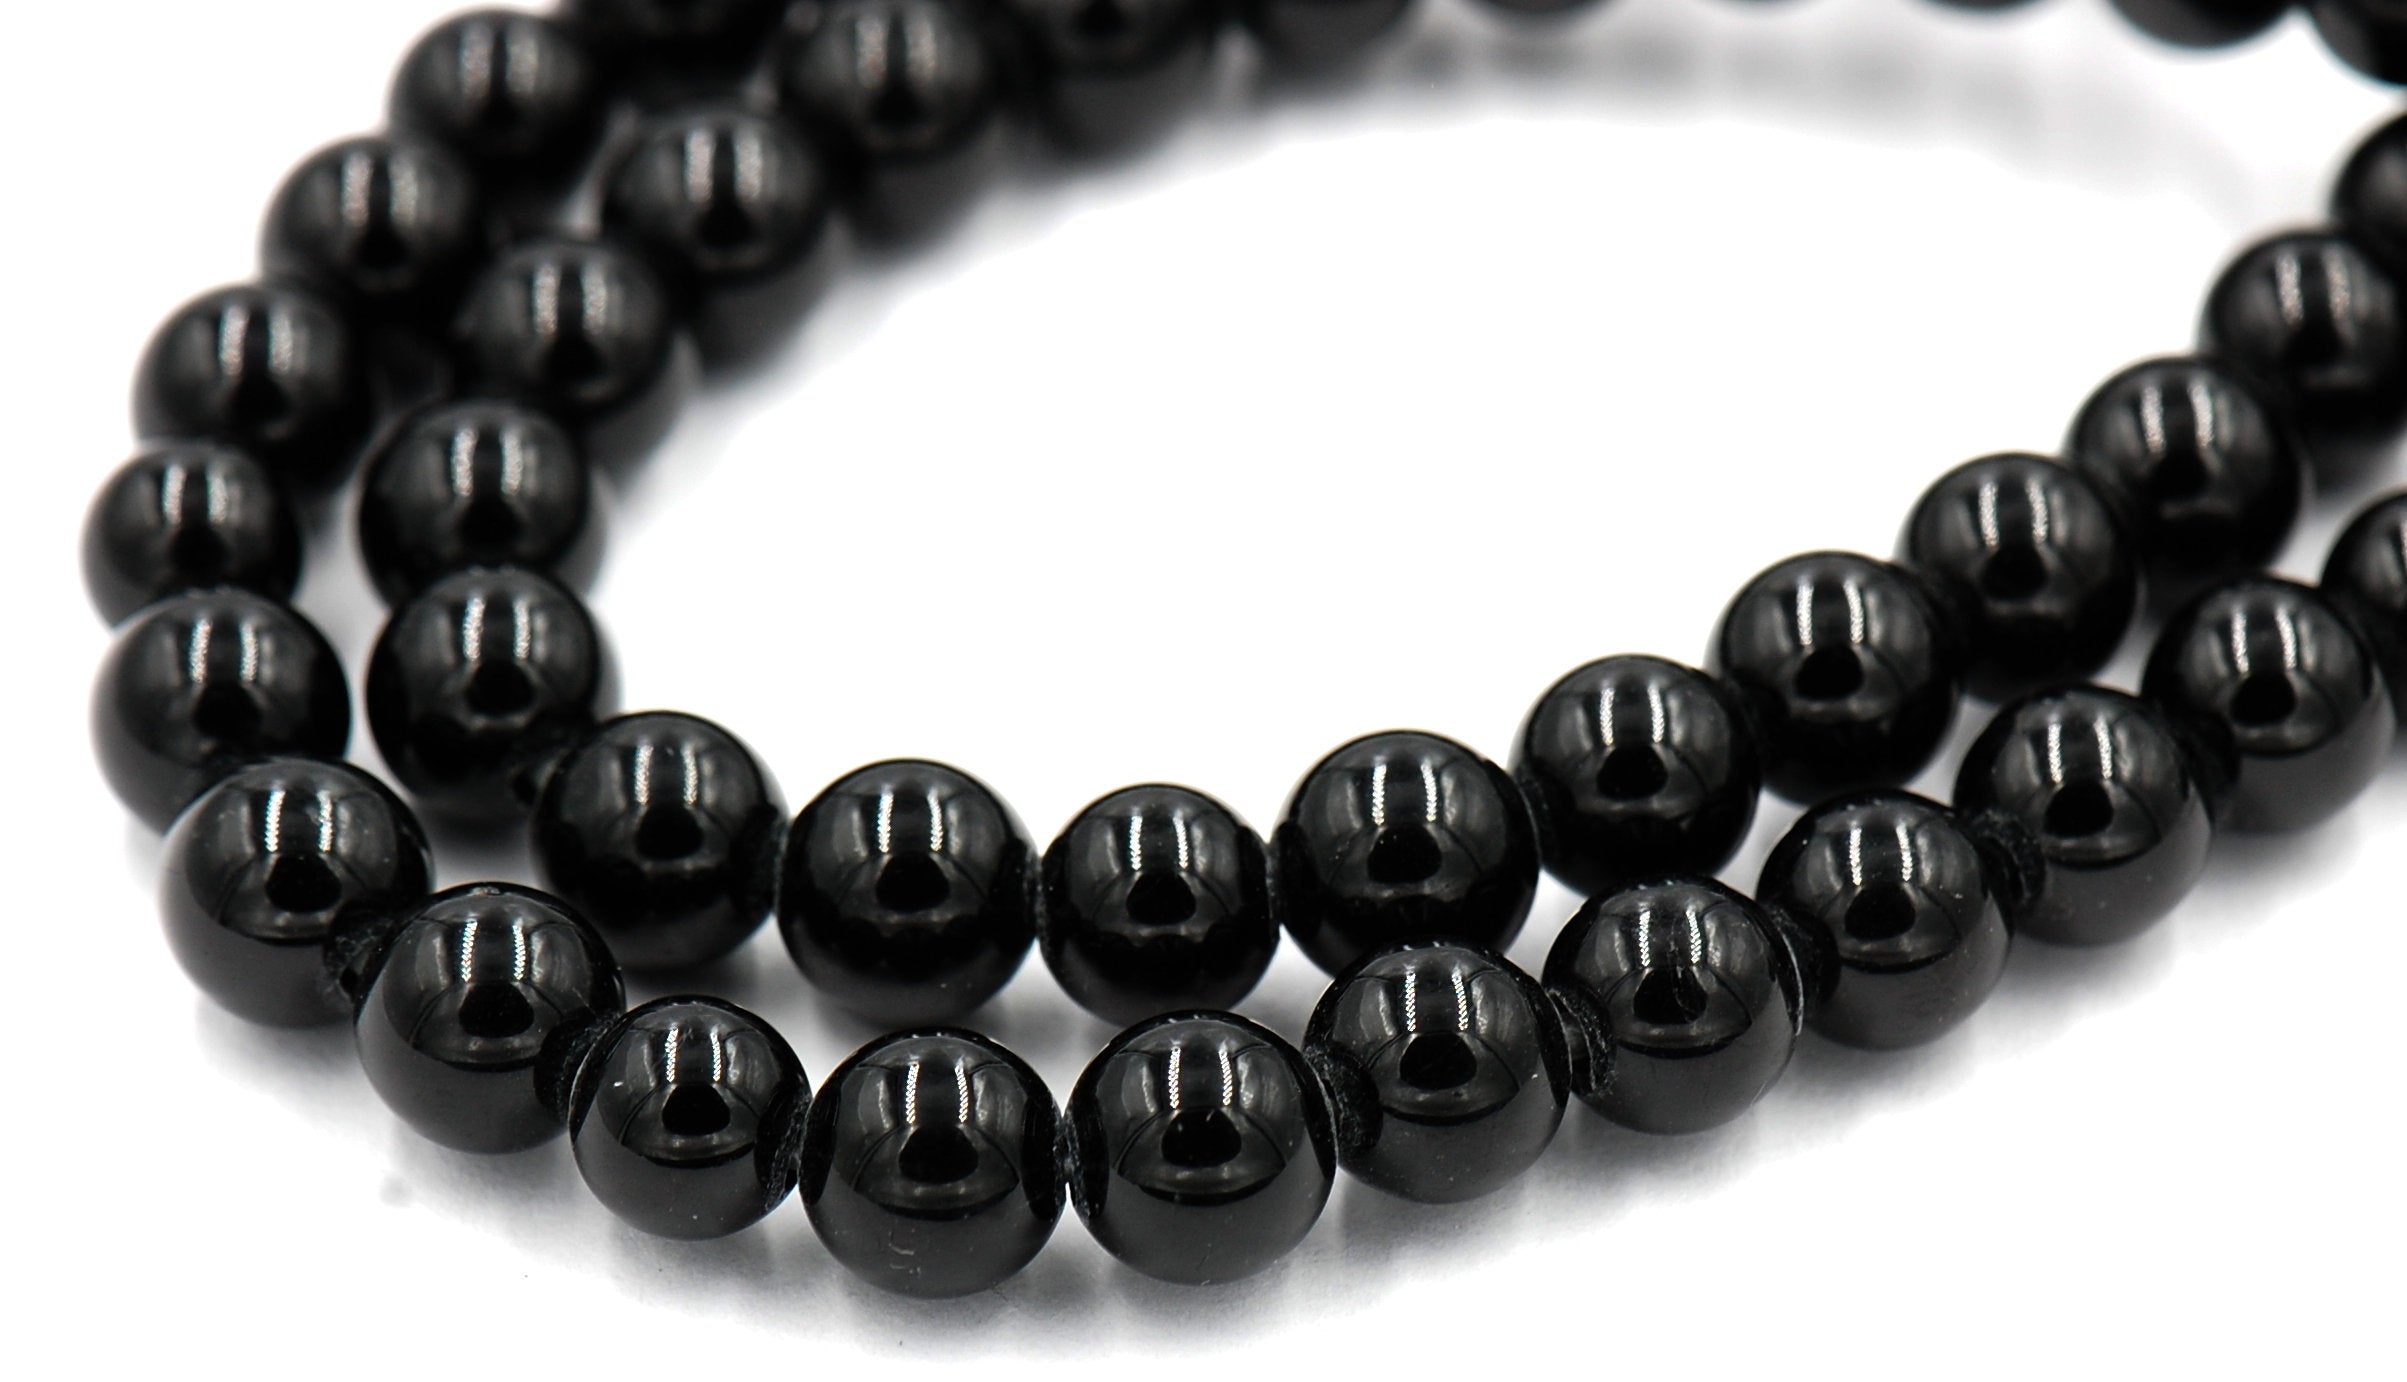 Large Hole, Black Tourmaline, Black 8mm Shiny round beads -15 inch strand